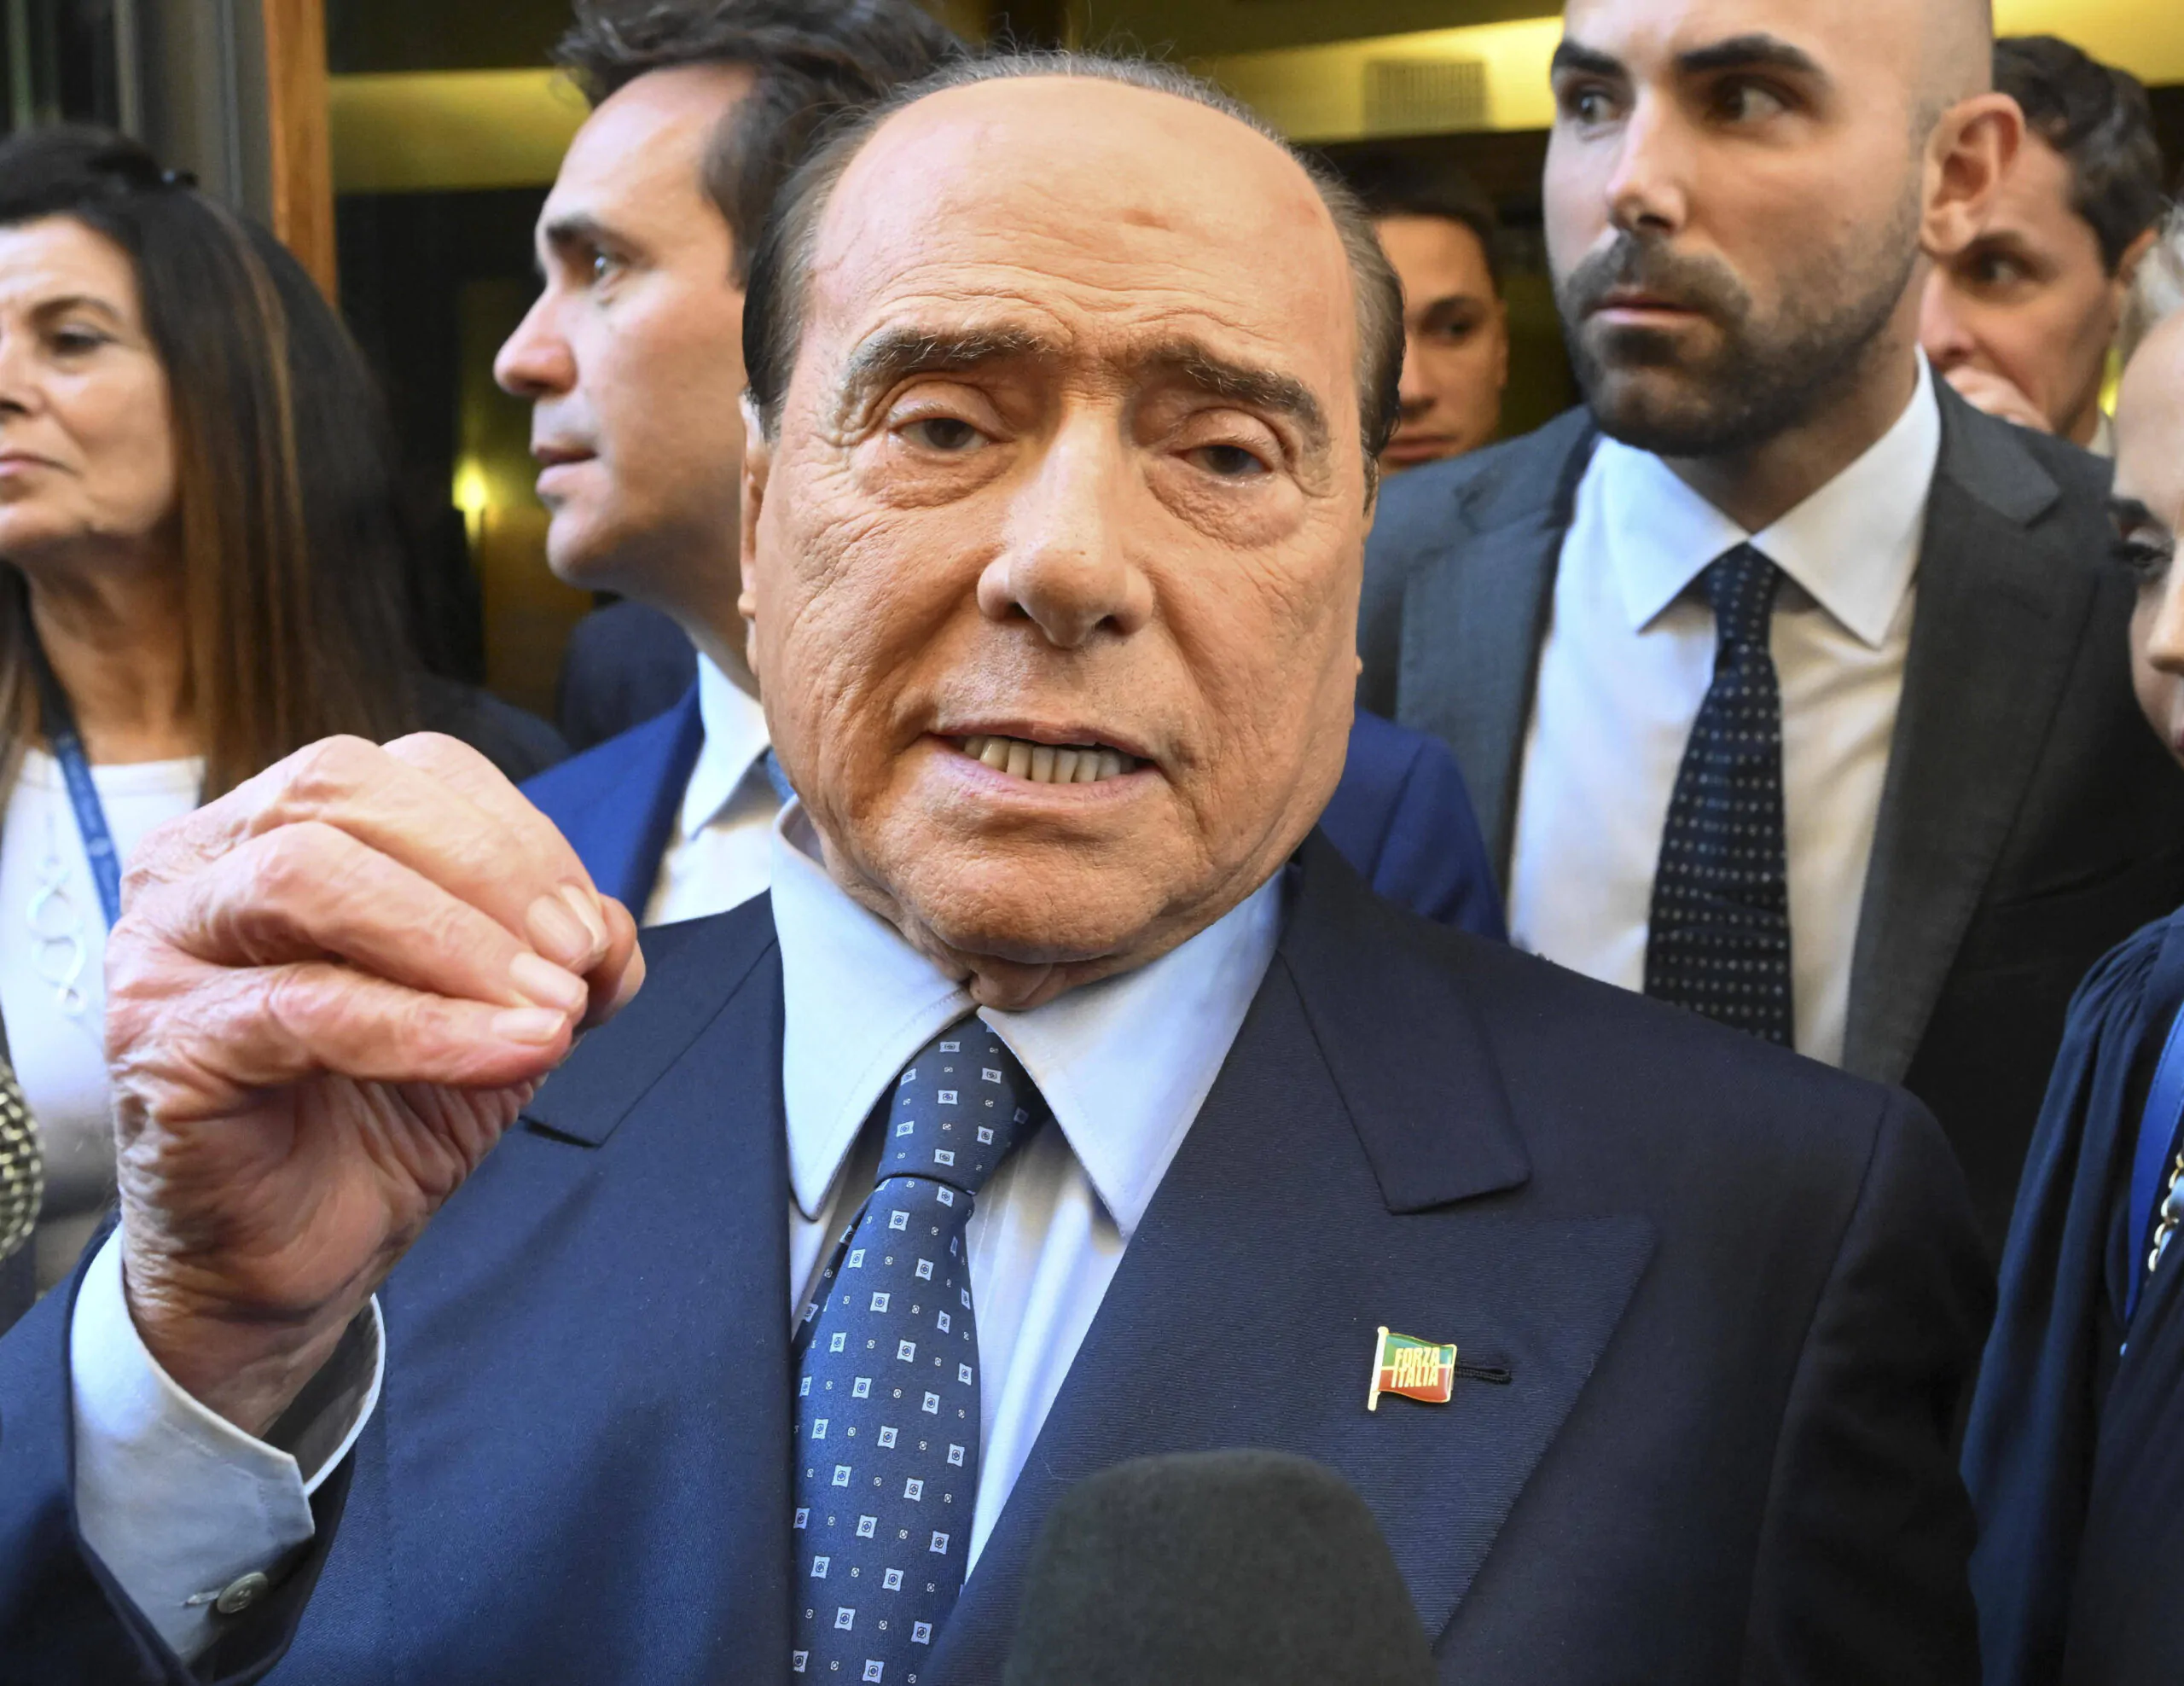 ULITM’ORA – Berlusconi nuovamente ricoverato all’ospedale San Raffaele